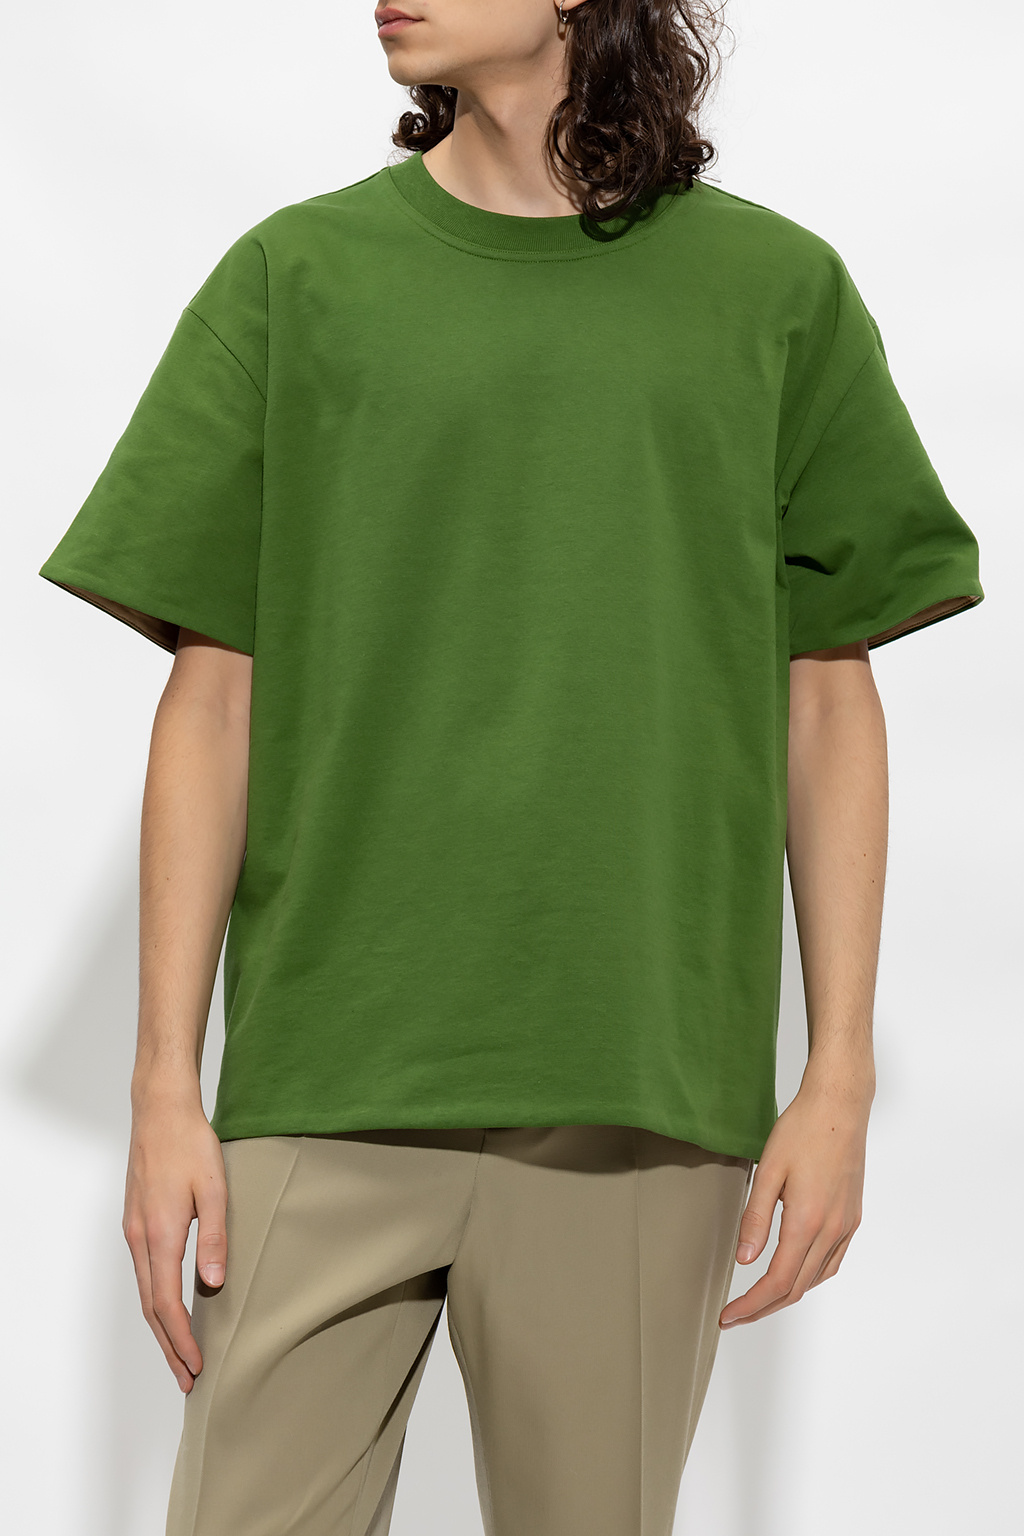 Green Cotton T-shirt with pocket Bottega Veneta - Vitkac HK